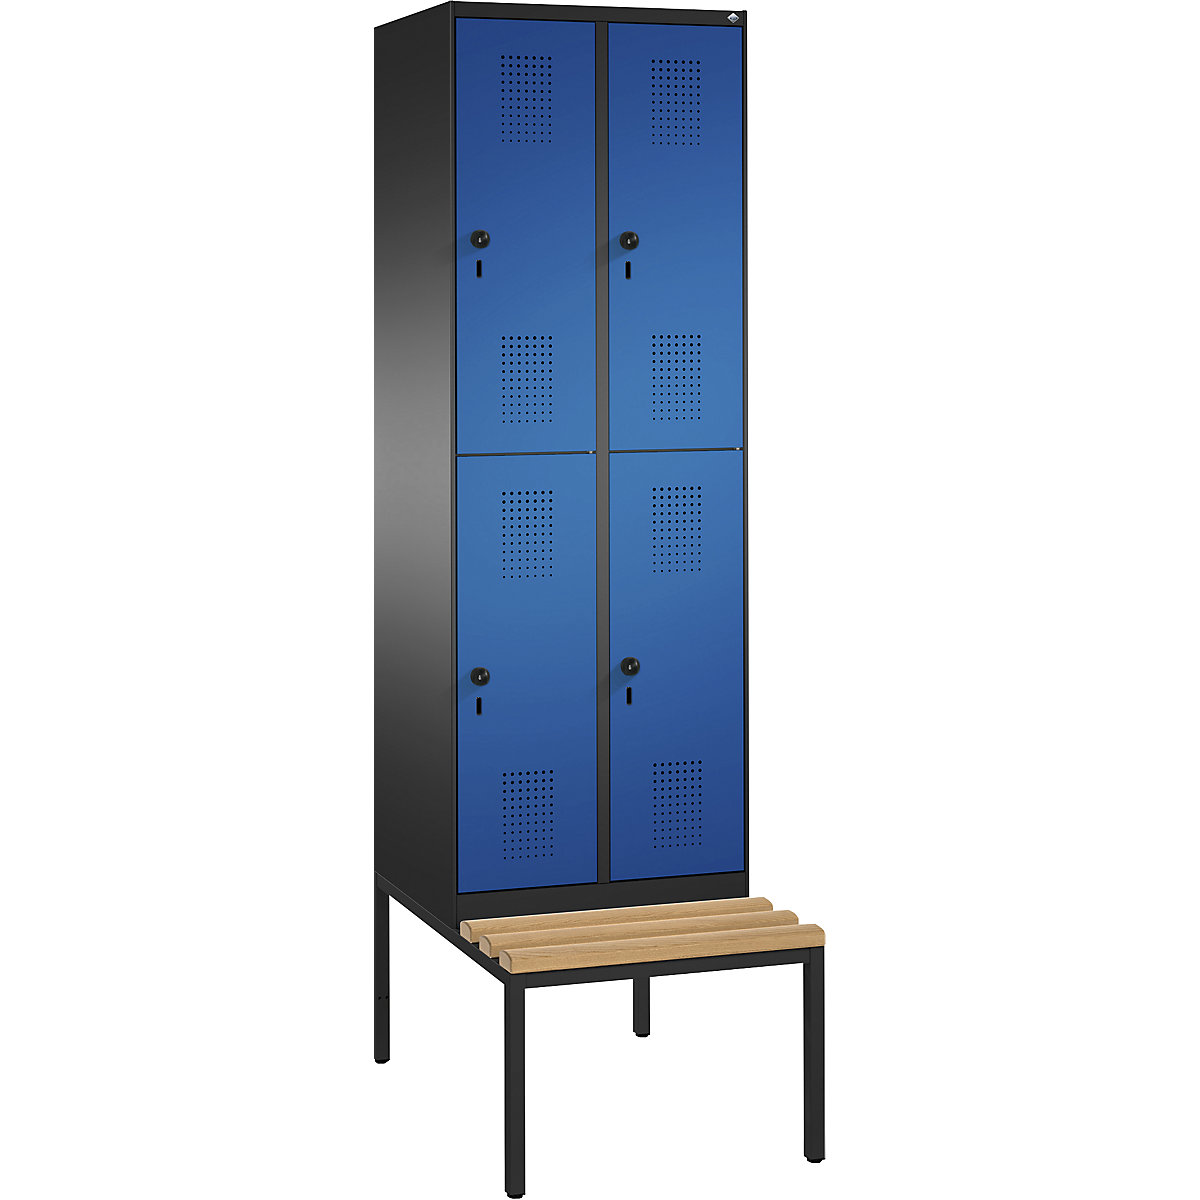 Penderie EVOLO à deux étages, avec banc – C+P, 2 compartiments, 2 casiers chacun, largeur compartiments 300 mm, gris noir / bleu gentiane-6